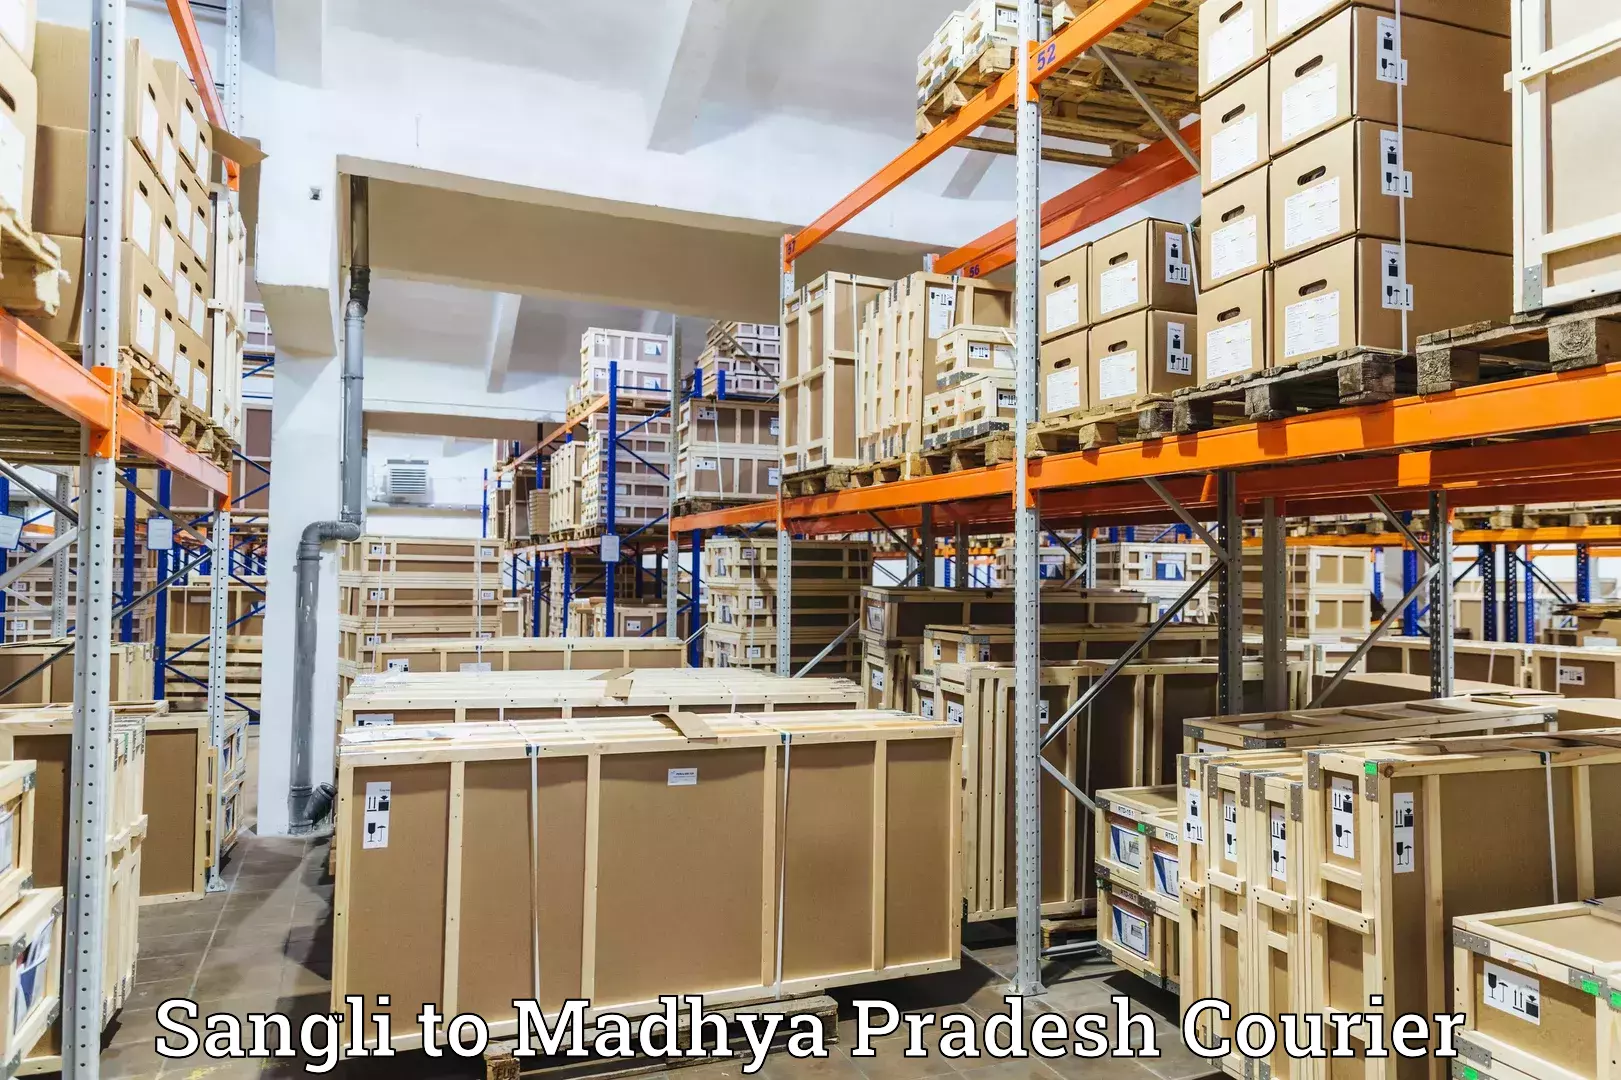 High-priority parcel service in Sangli to Nagda